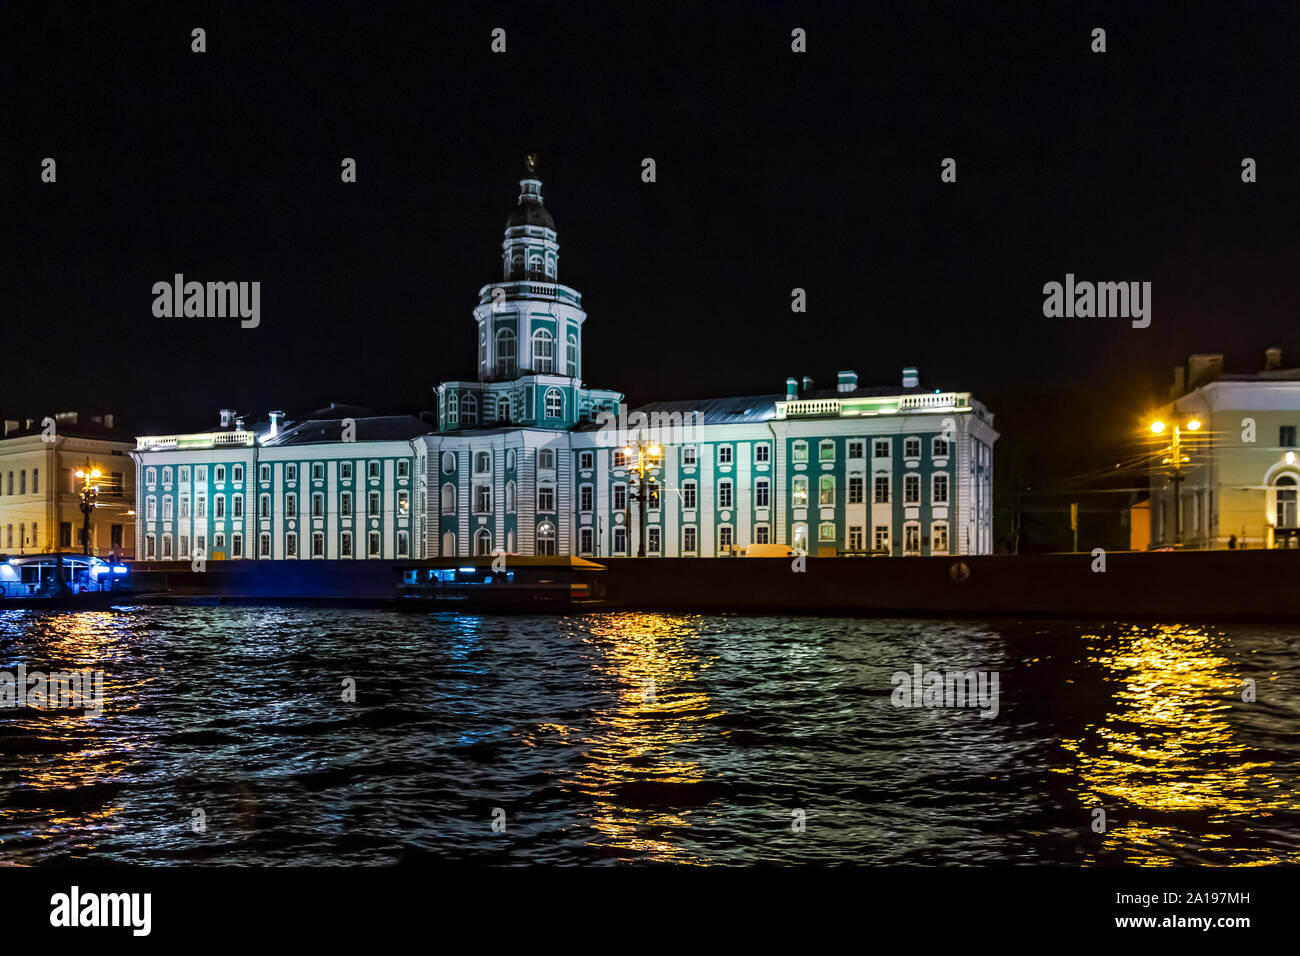 Die kunstkammer Gebäude (Museum) auf der Universität Damm, gesehen von der Newa, St. Petersburg, Russland. Stockfoto